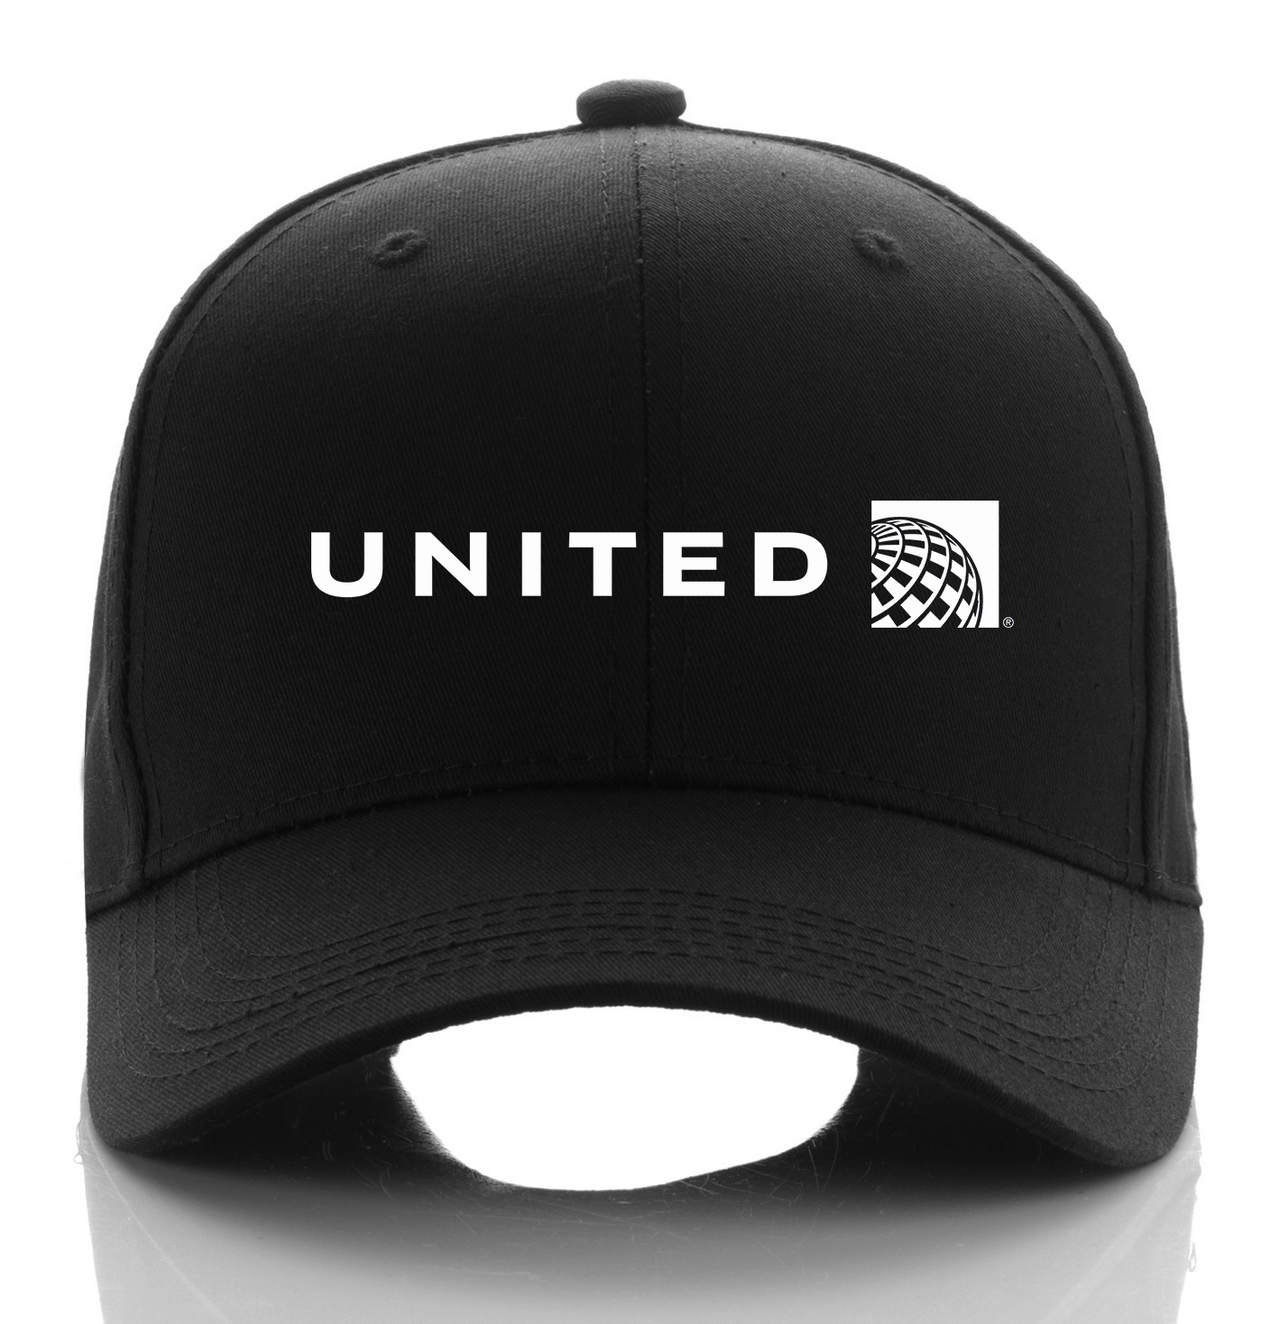 UNITED AIRLINE DESIGNED CAP